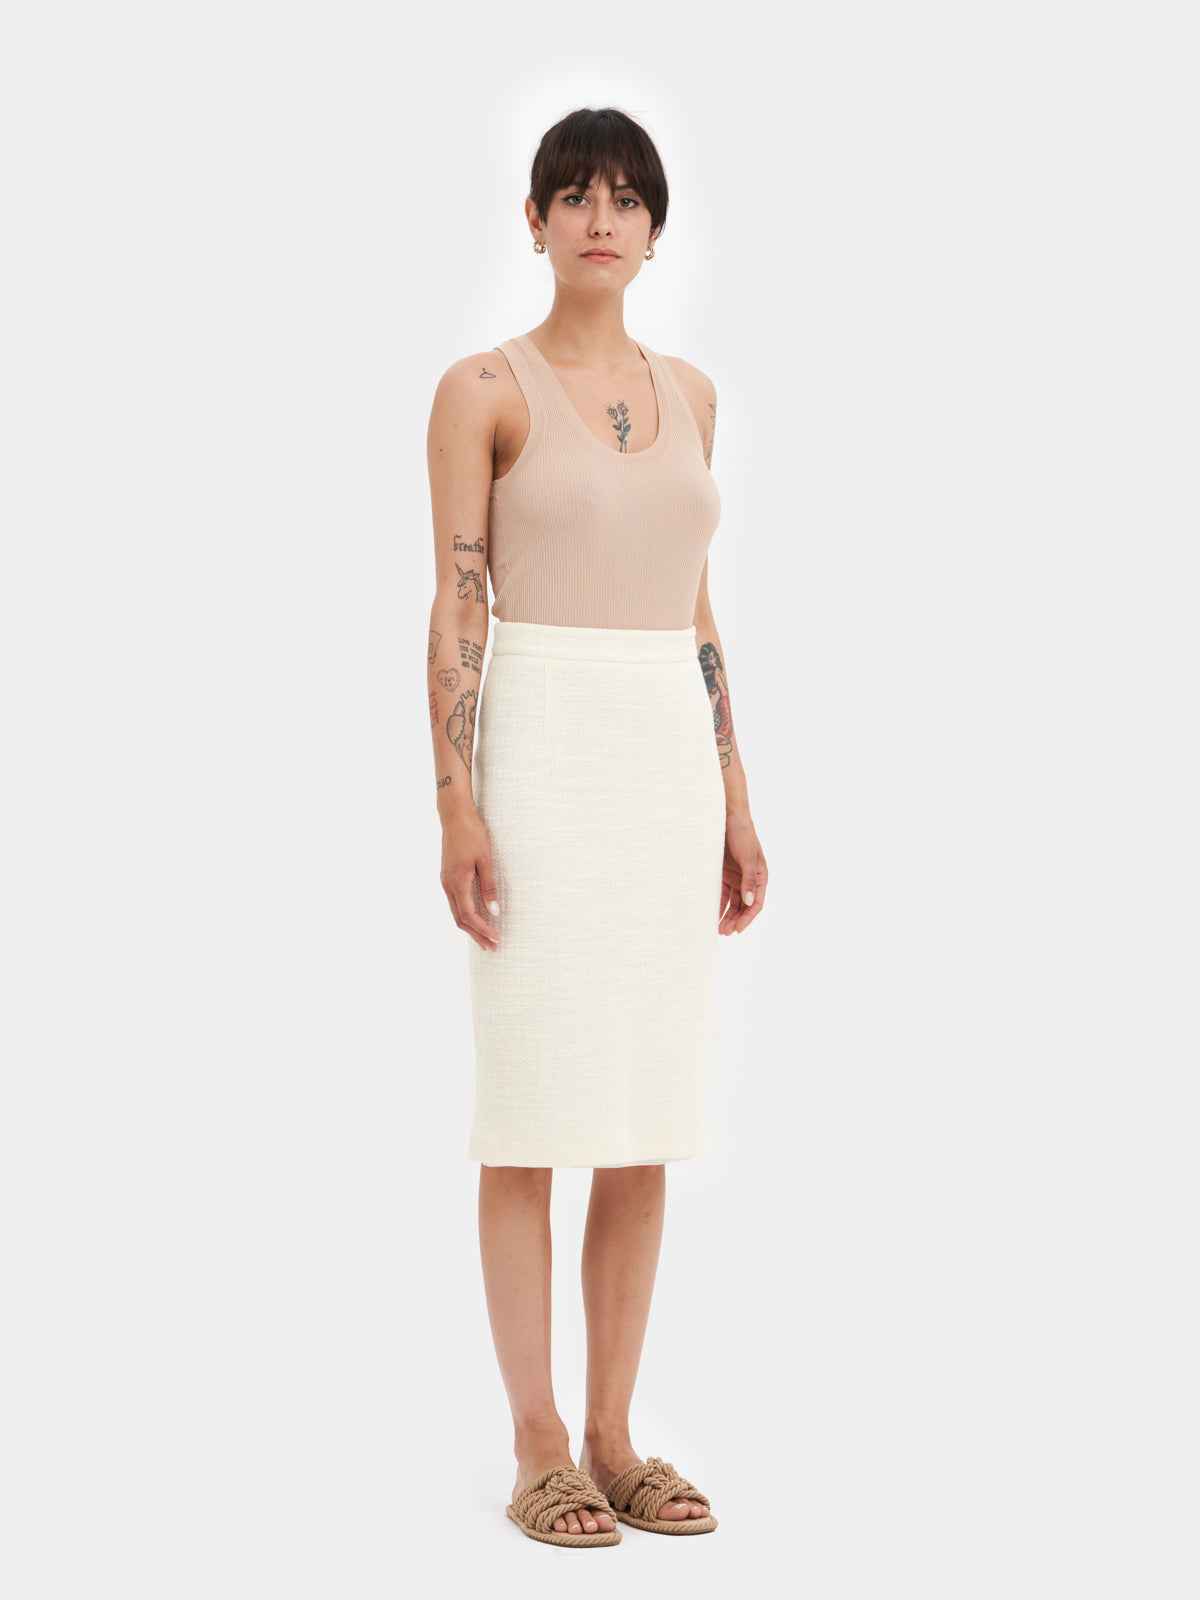 Longuette skirt in 100% cotton 🍃